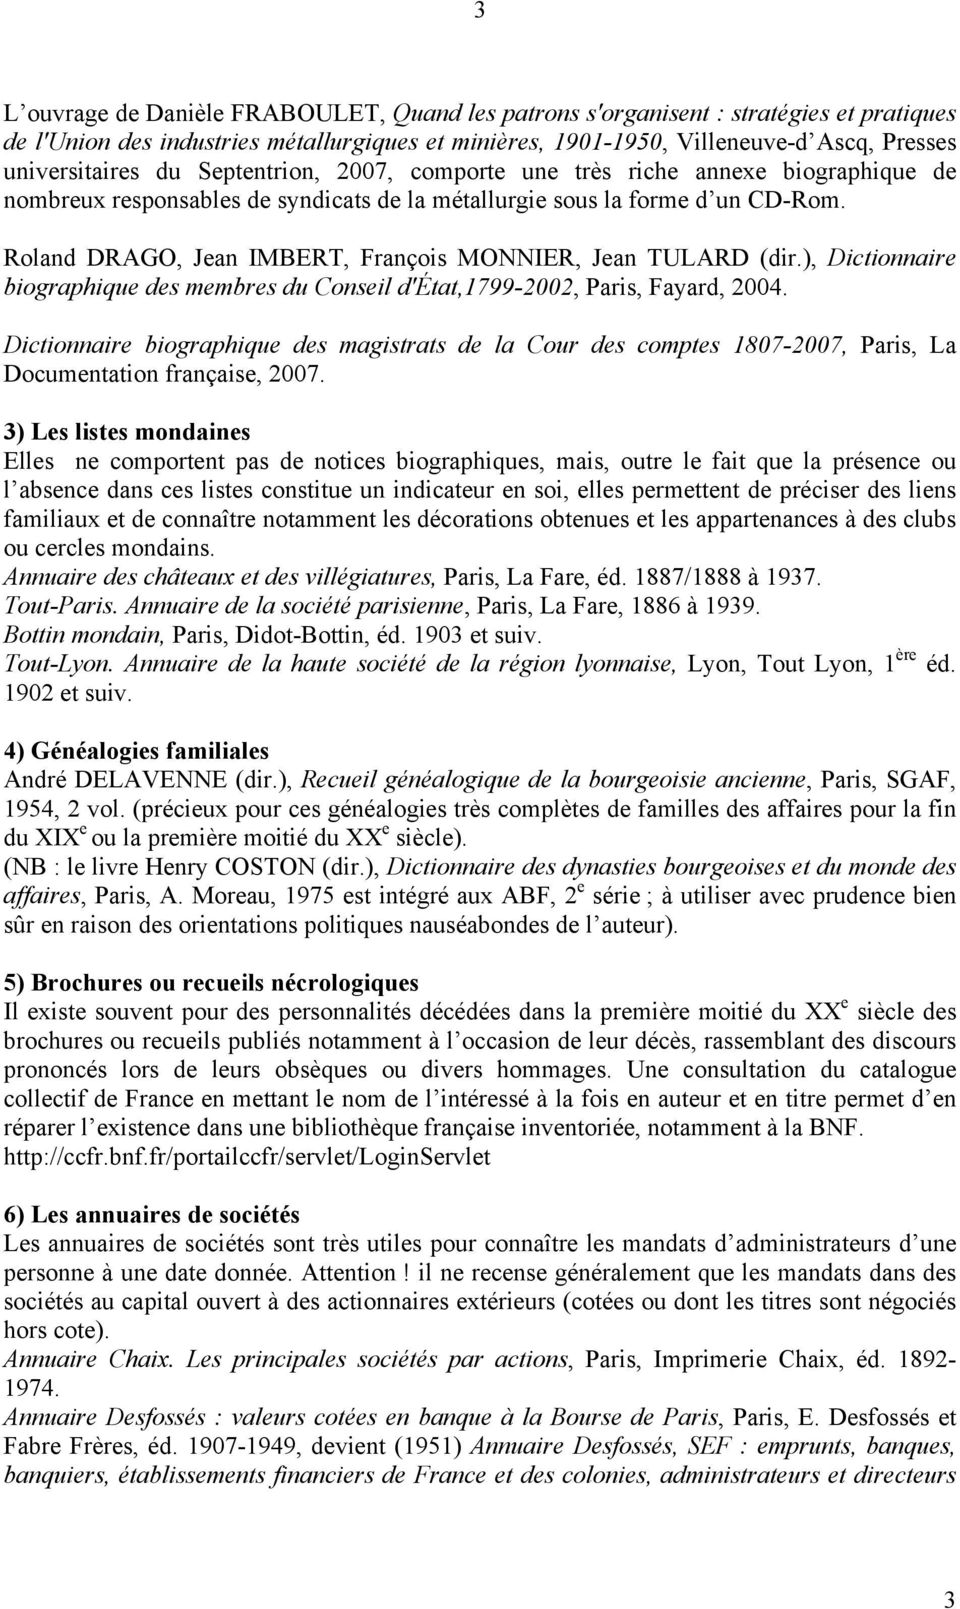 Roland DRAGO, Jean IMBERT, François MONNIER, Jean TULARD (dir.), Dictionnaire biographique des membres du Conseil d'état,1799-2002, Paris, Fayard, 2004.